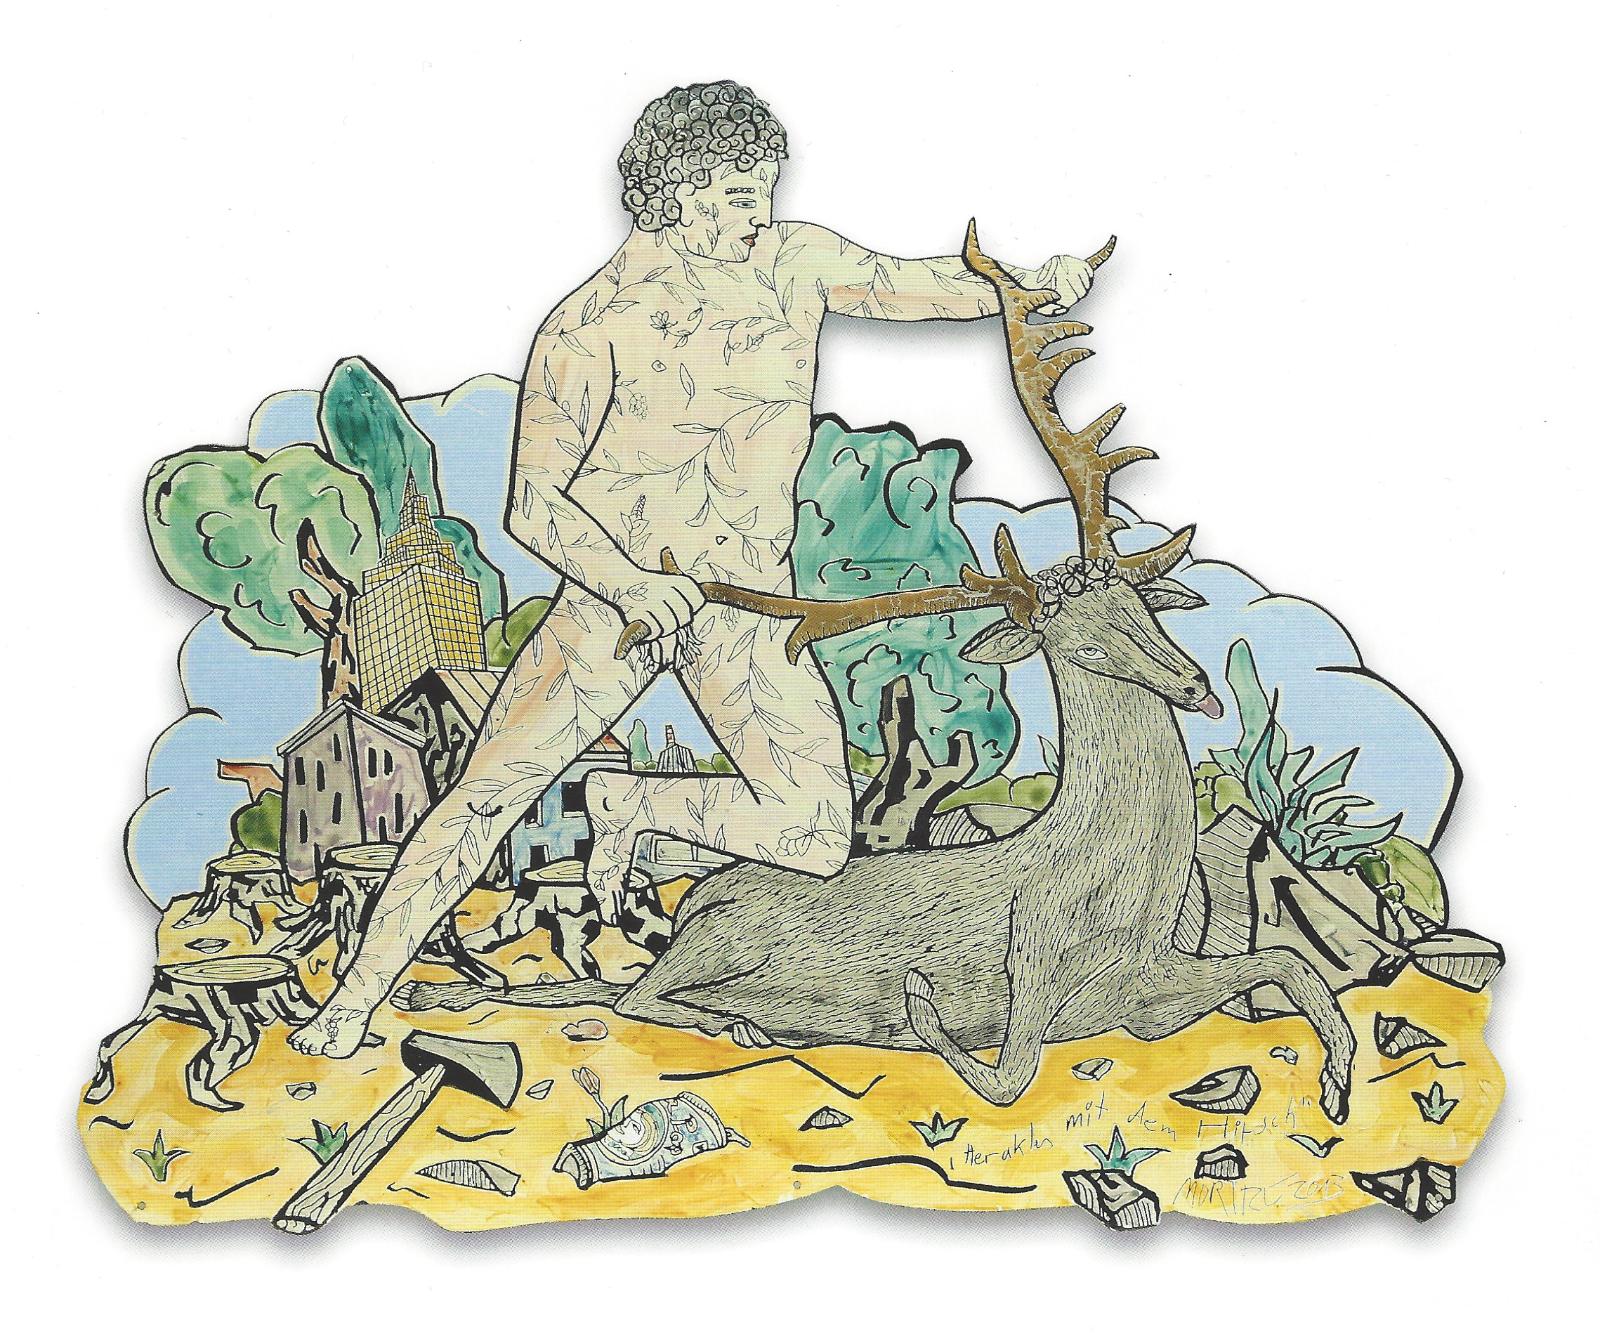 Moritz Götze, Herakles mit dem Hirsch,  2013, Emaillemalerei, 97 x 120 cm